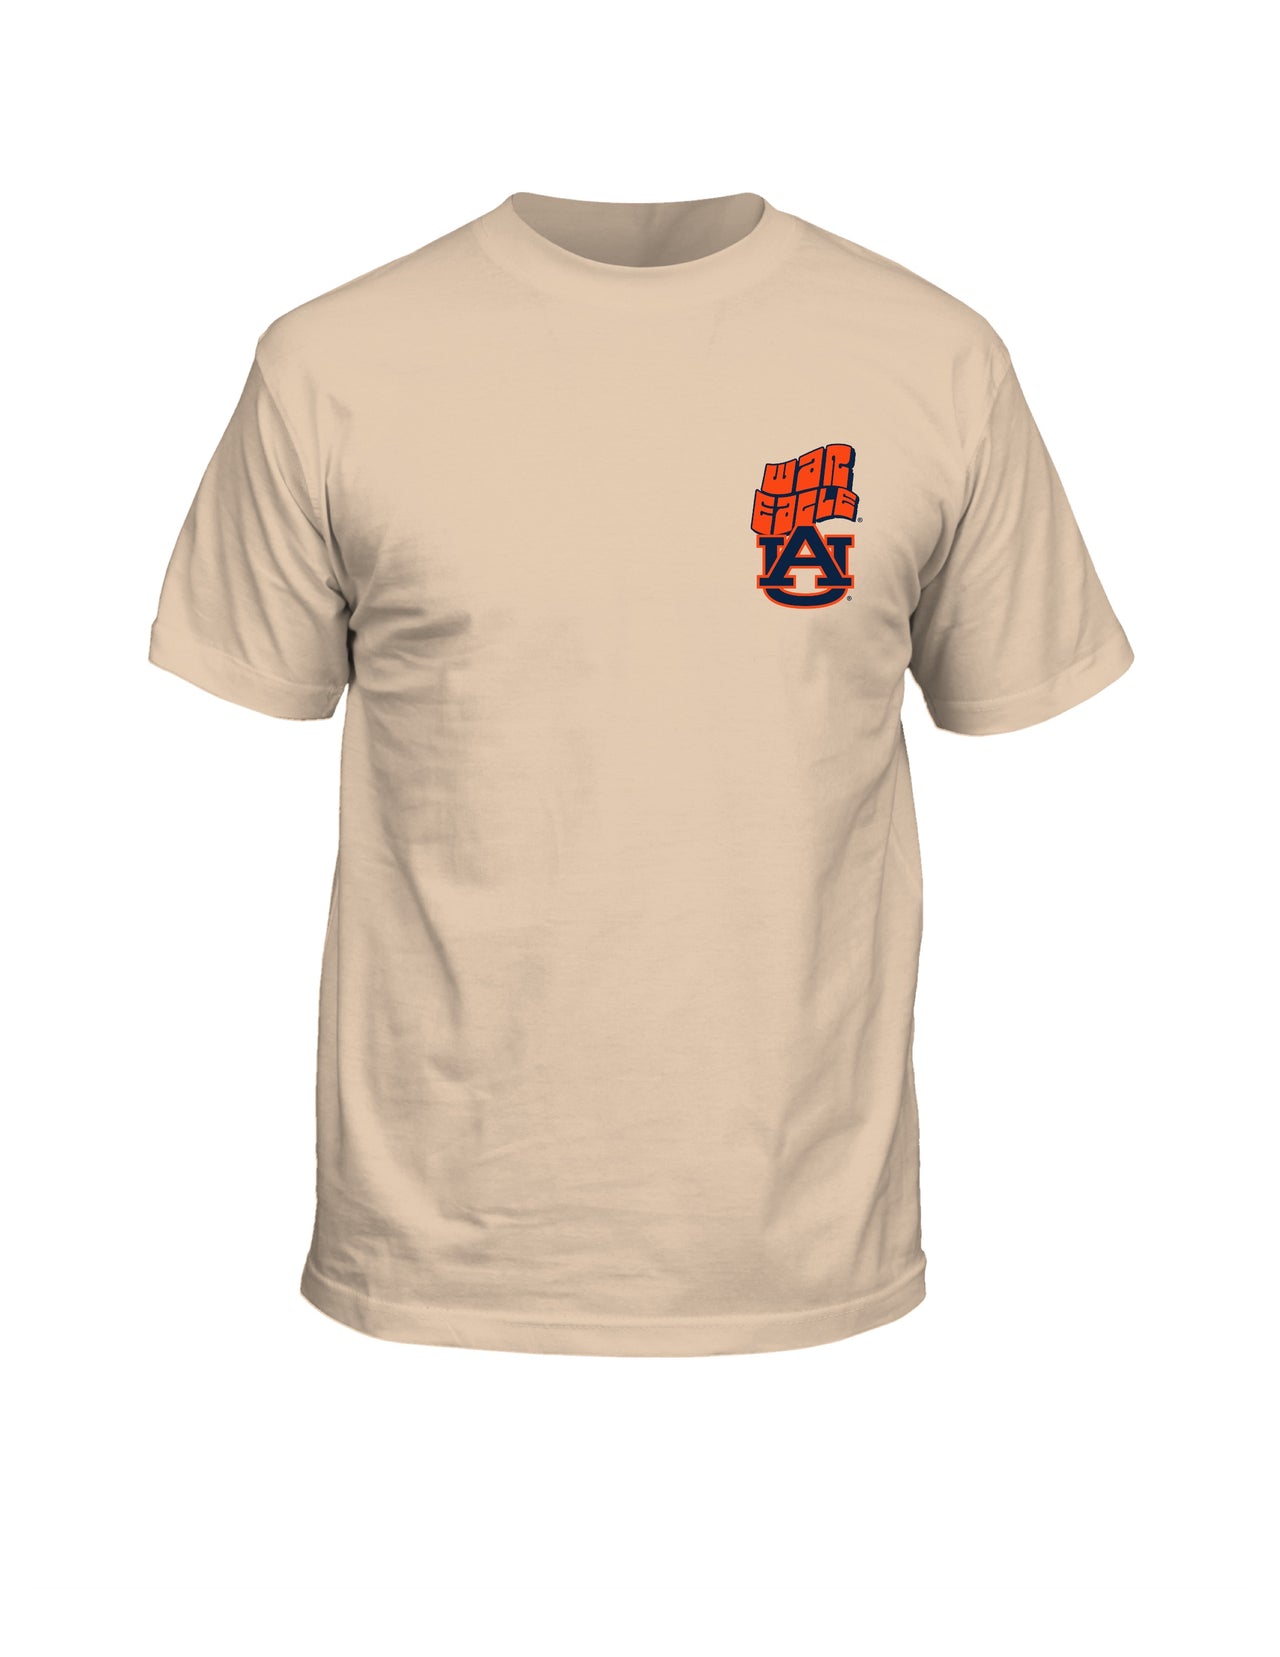 Auburn Tigers Stadium Helmet Vintage Comfort Colors Ivory T-Shirt